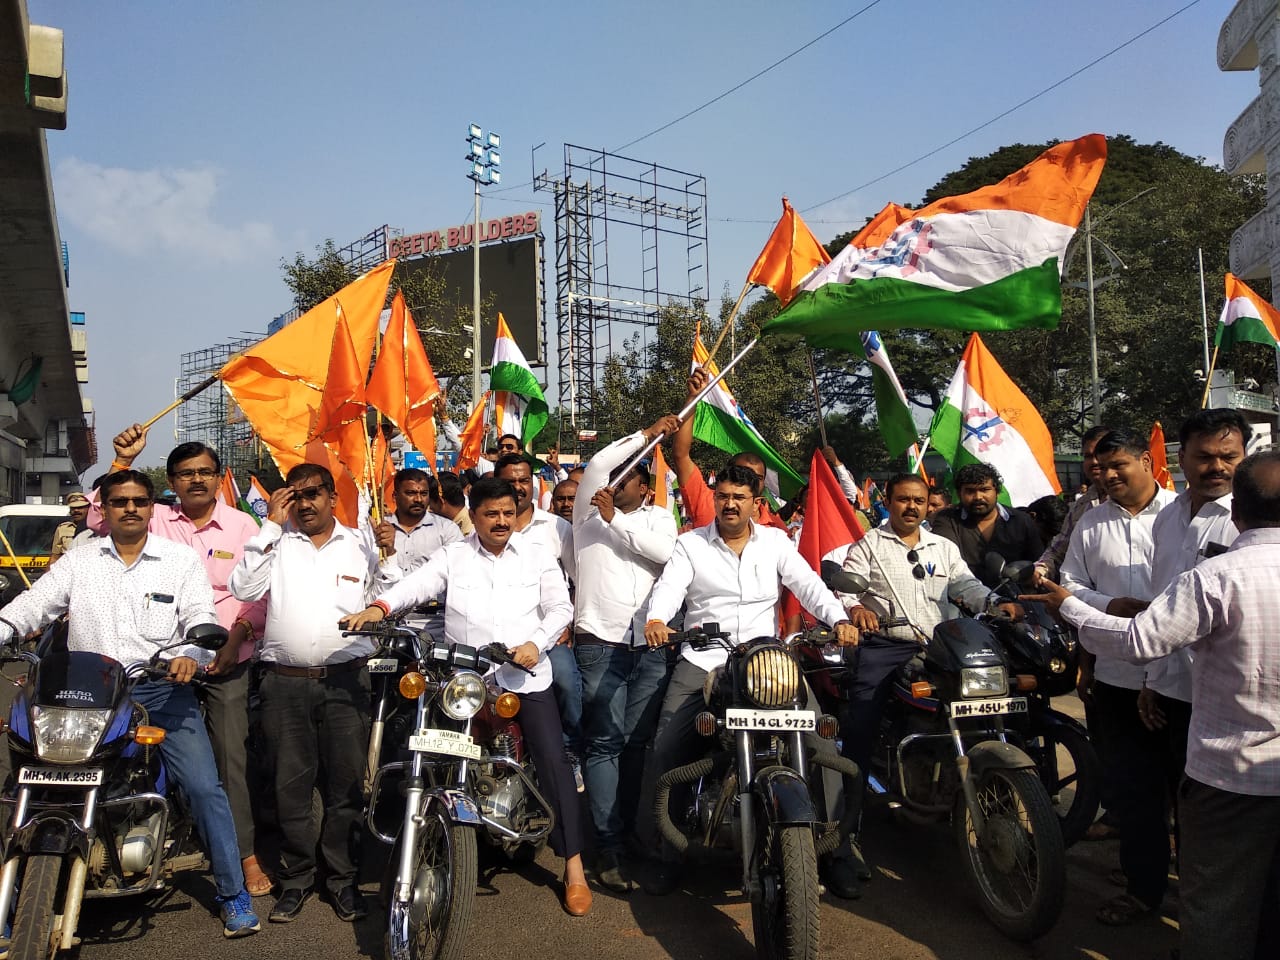 भारत बंद : उद्योगनगरीतून हजारो कामगारांची दुचाकी रॅली, विविध संघटना सहभागी